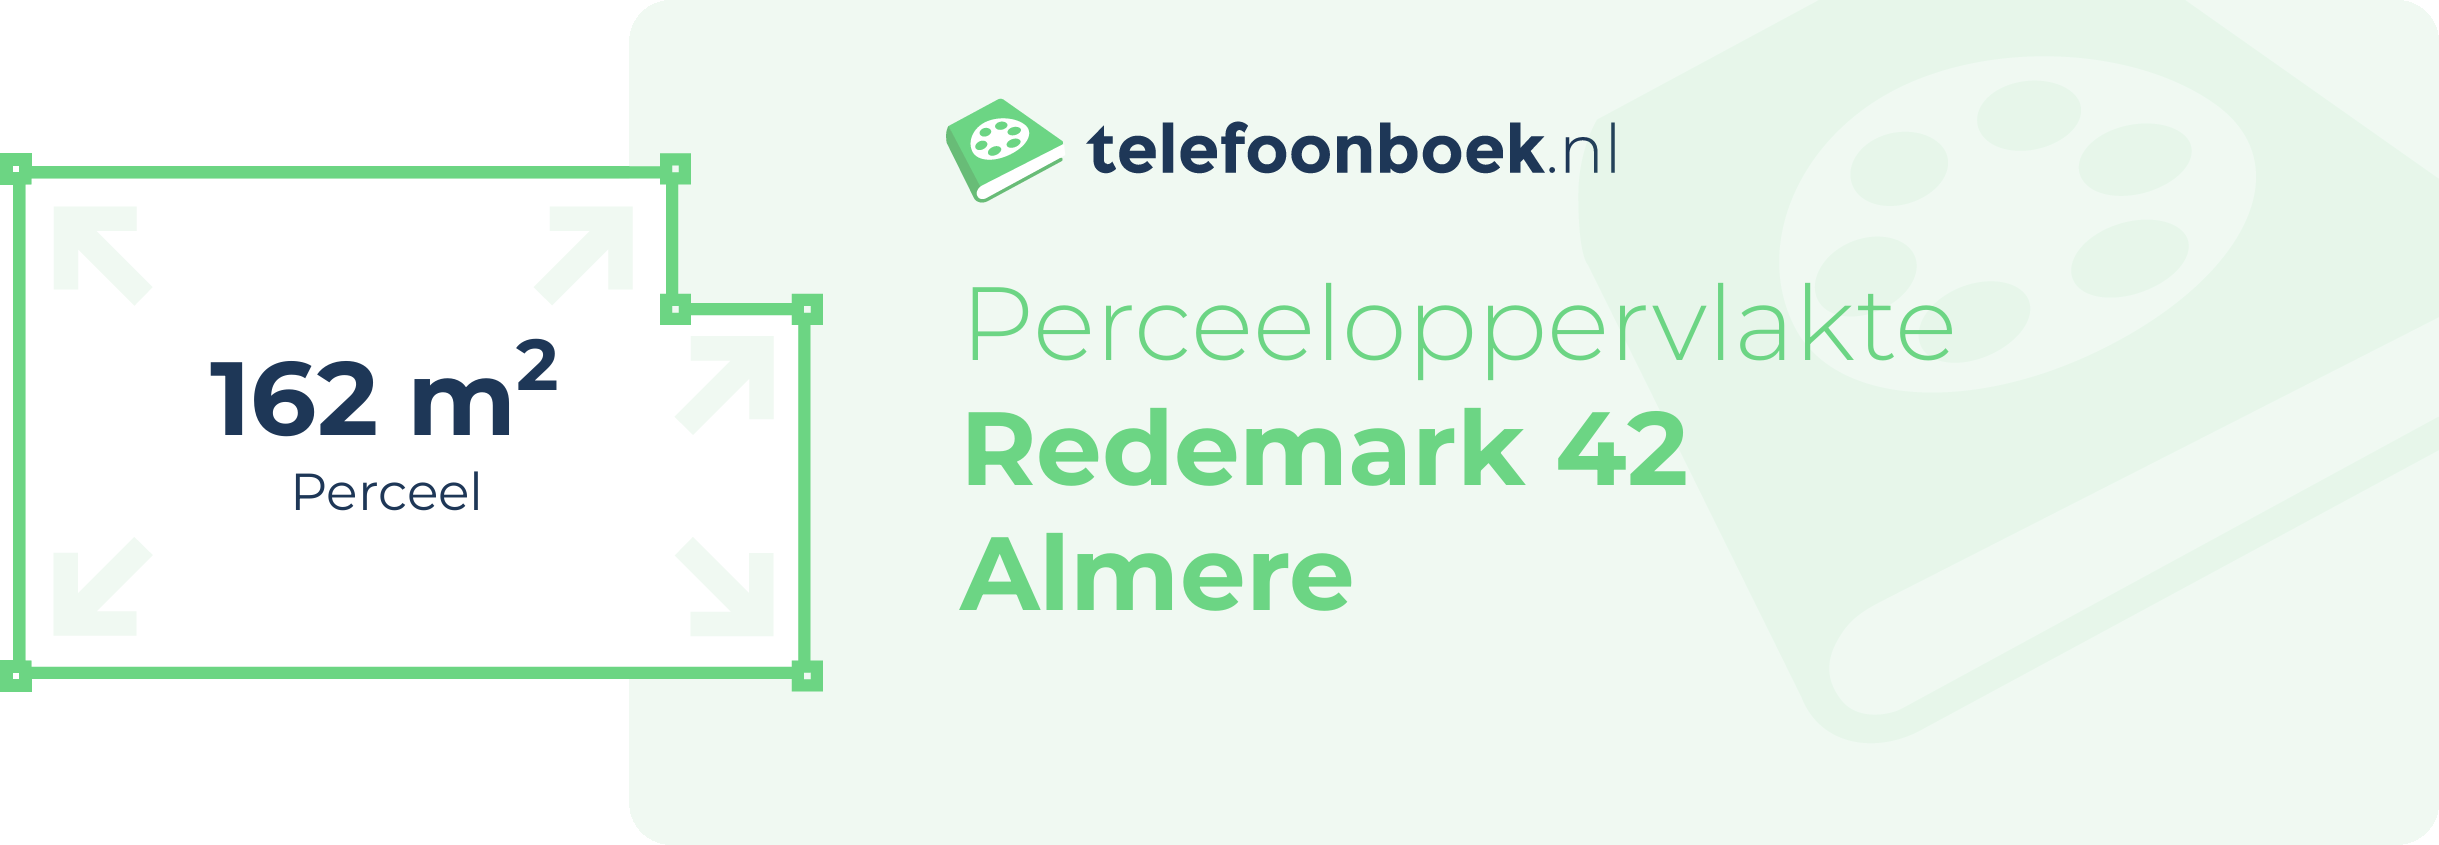 Perceeloppervlakte Redemark 42 Almere